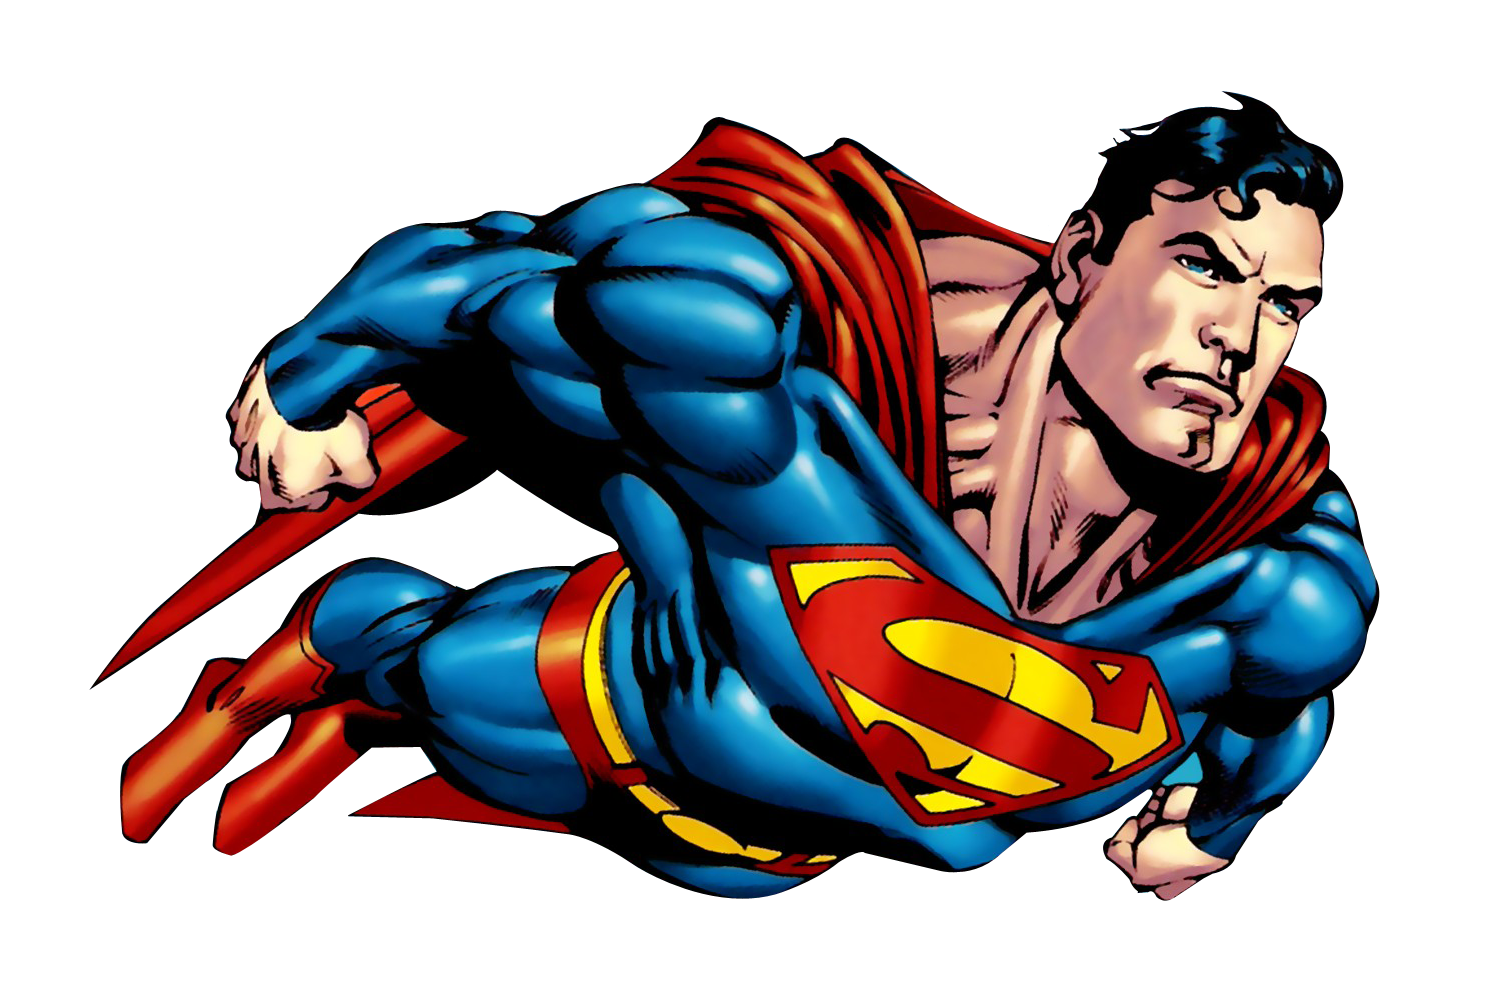 Superman Flying Télécharger limage PNG Transparente